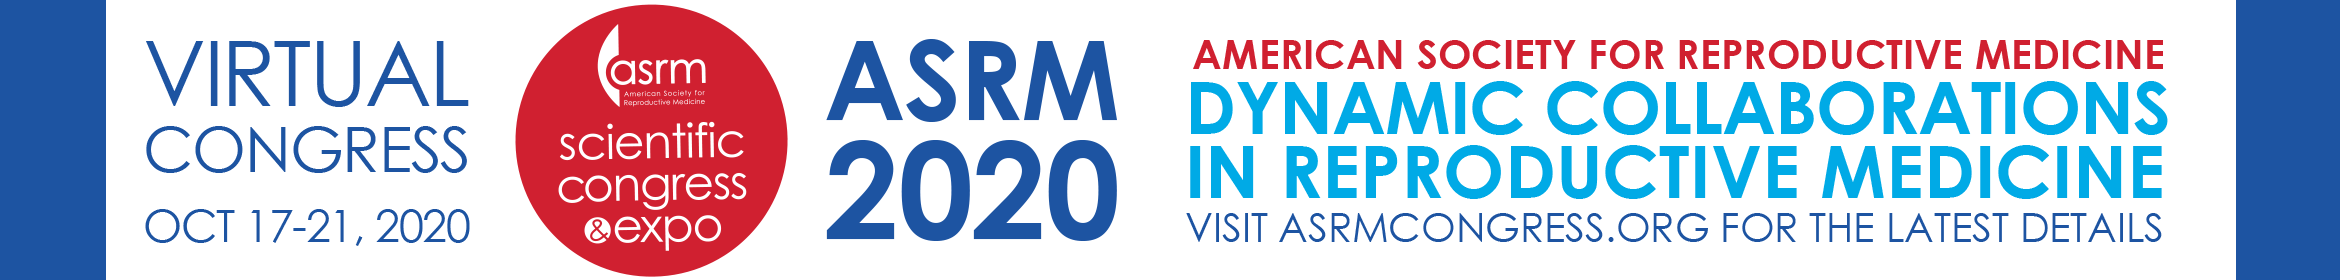 ASRM 2020 Virtual Scientific Congress  Main banner